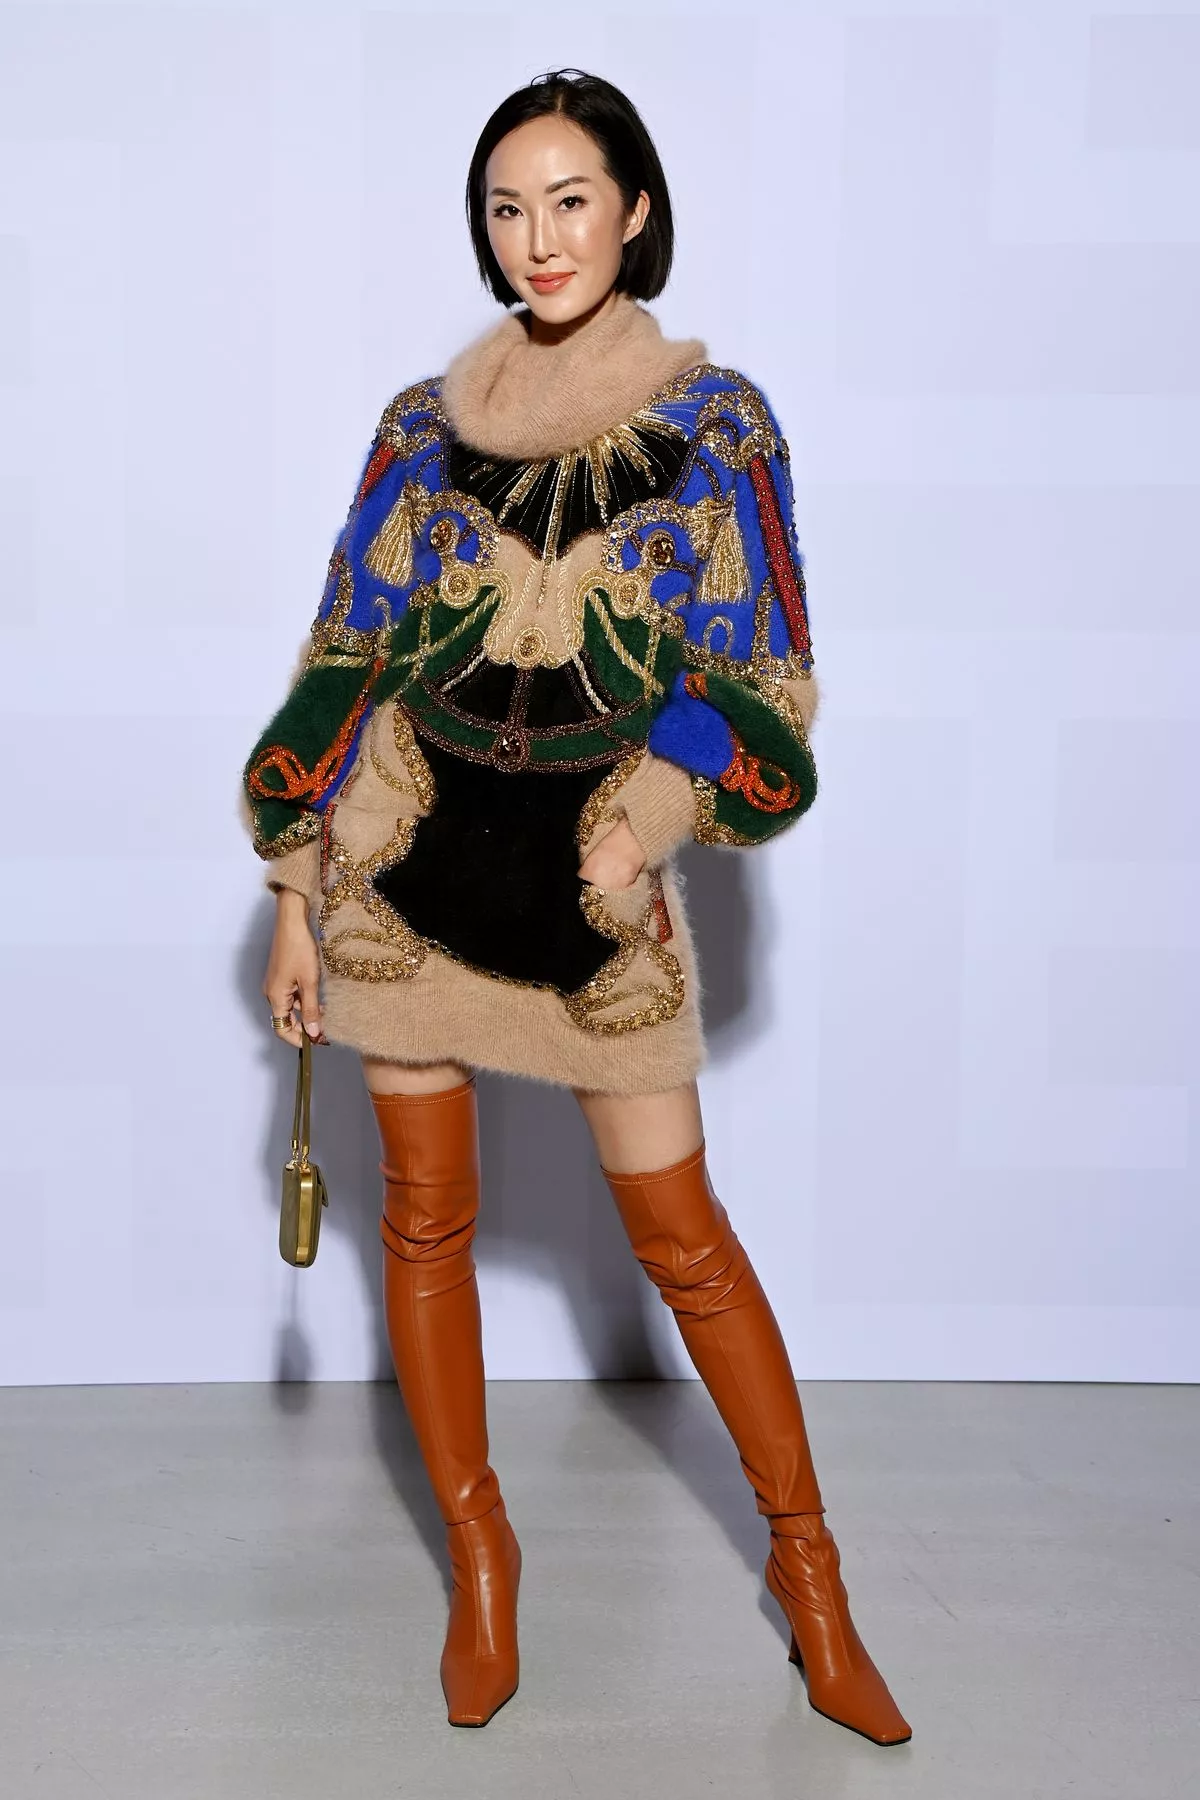 Криселл Лим на шоу Balmain Womenswear Весна/лето 2022 в рамках Недели моды, фото 1